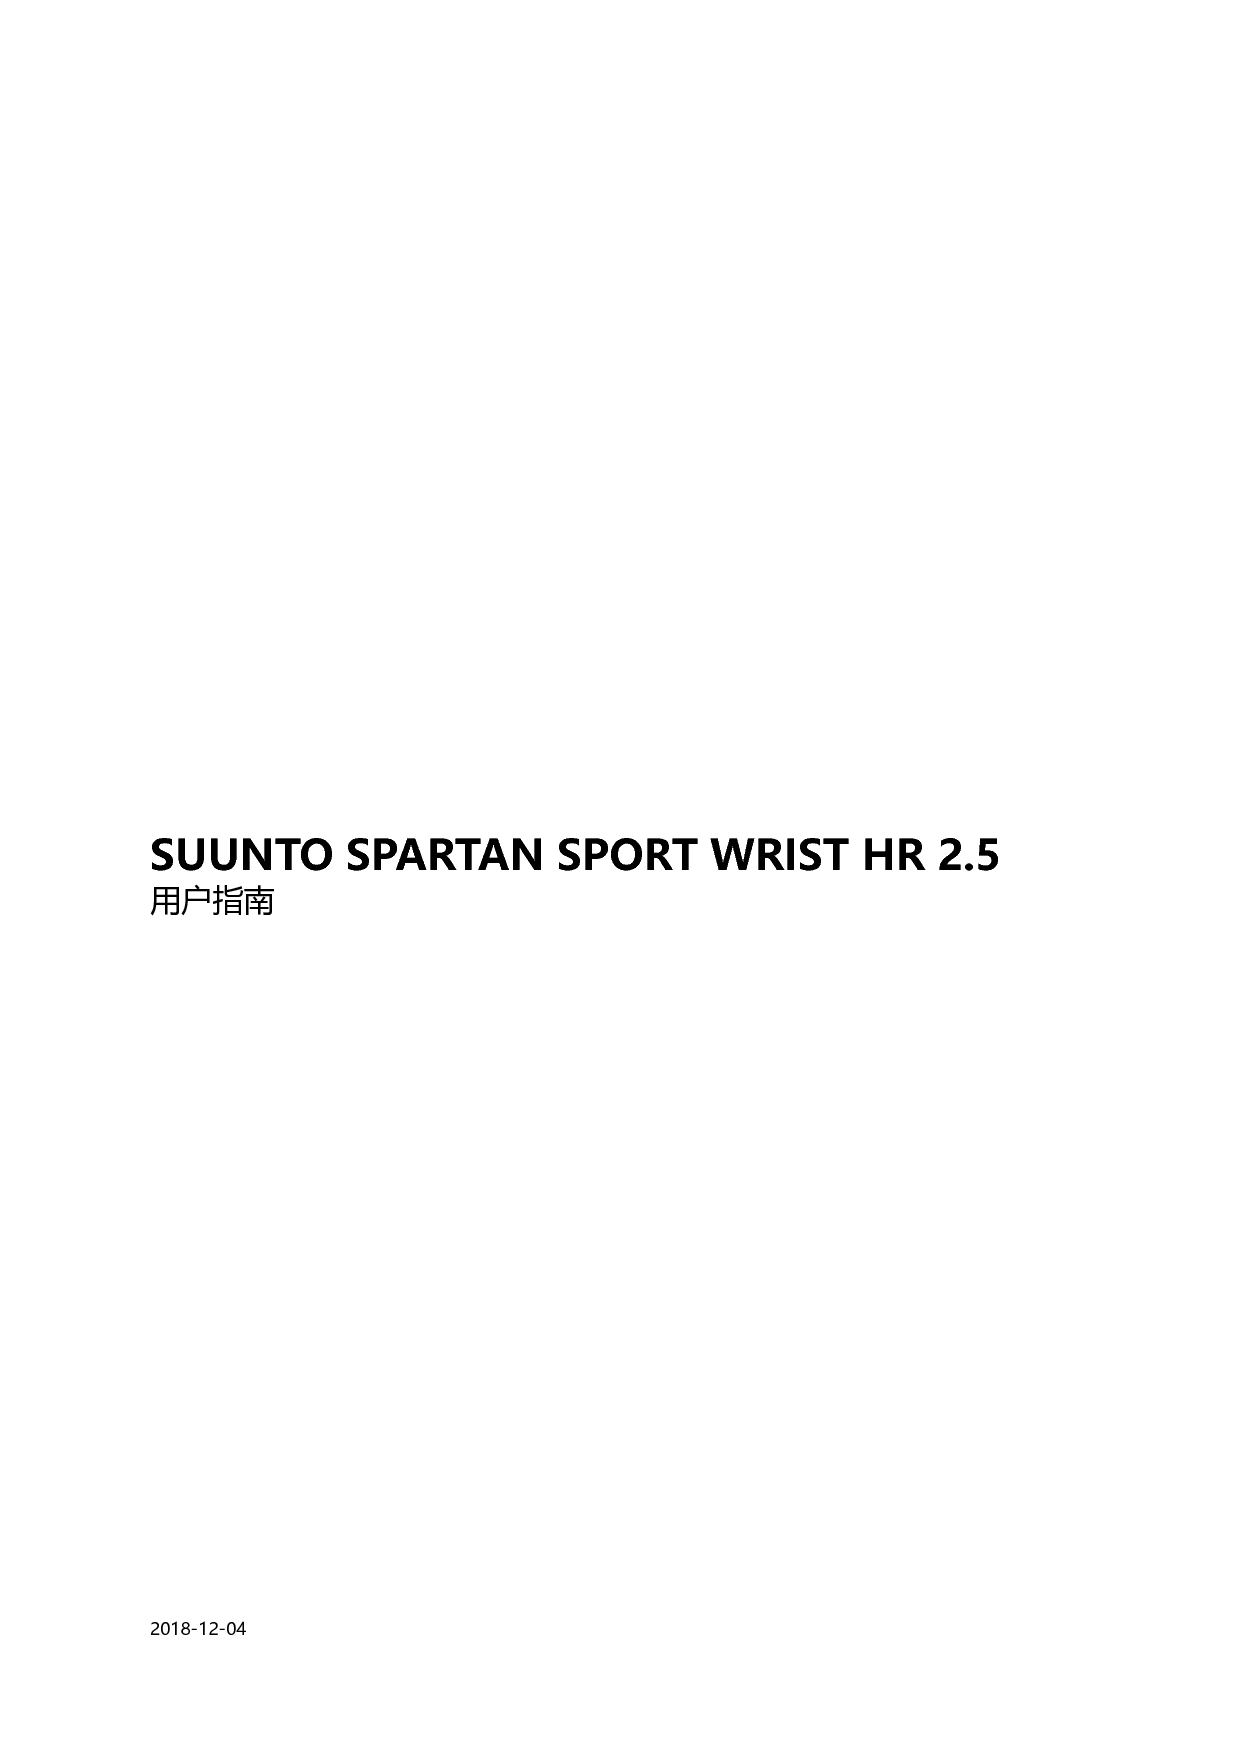 松拓 Suunto SPARTAN SPORT WRIST HR 2.5 用户指南 封面